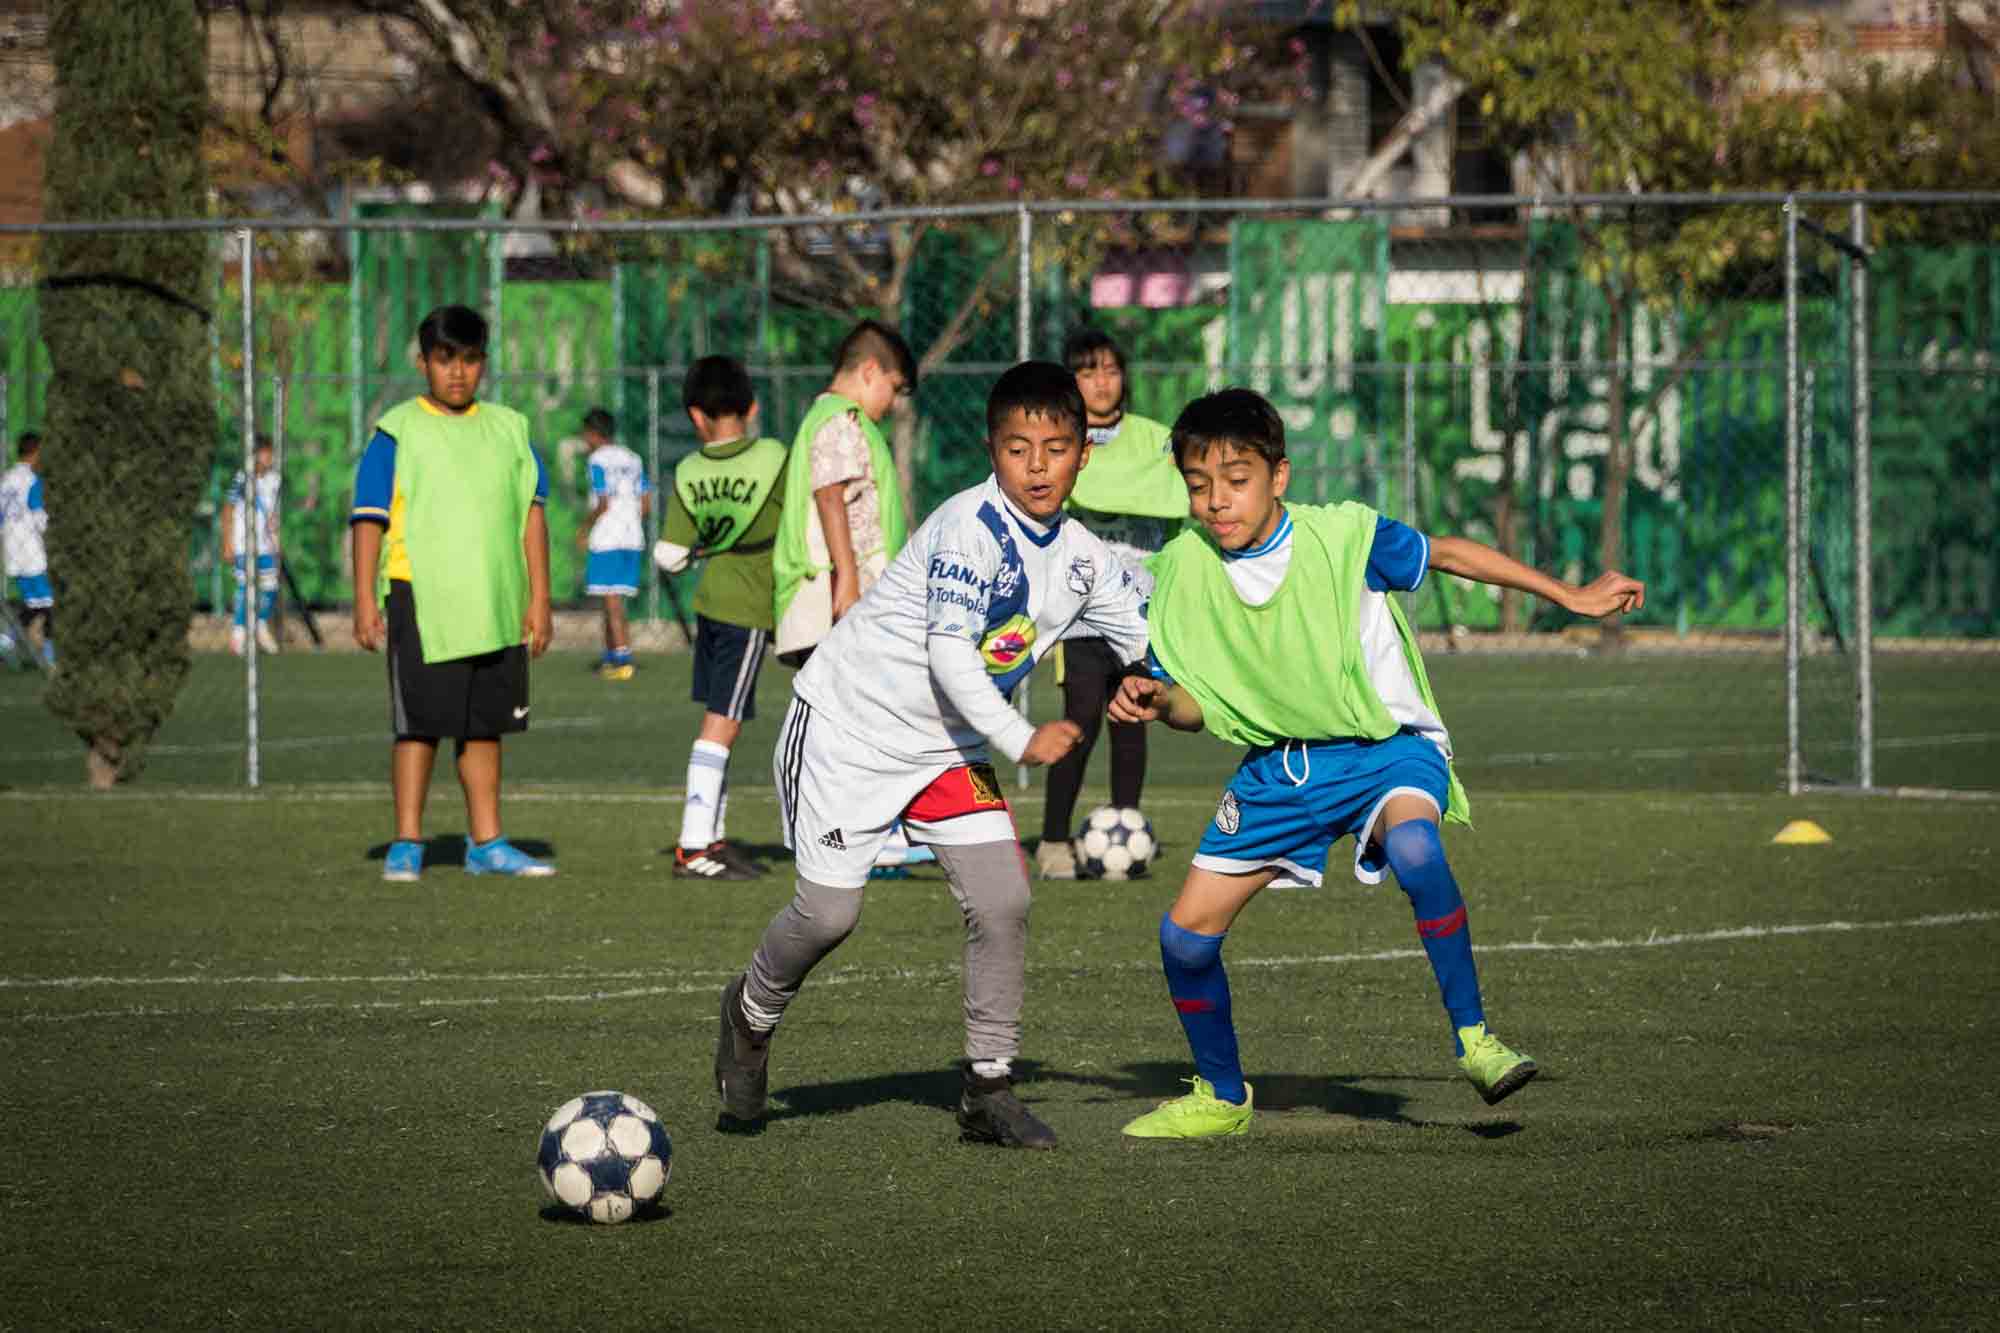 Two boys play soccer on a field in Oaxaca